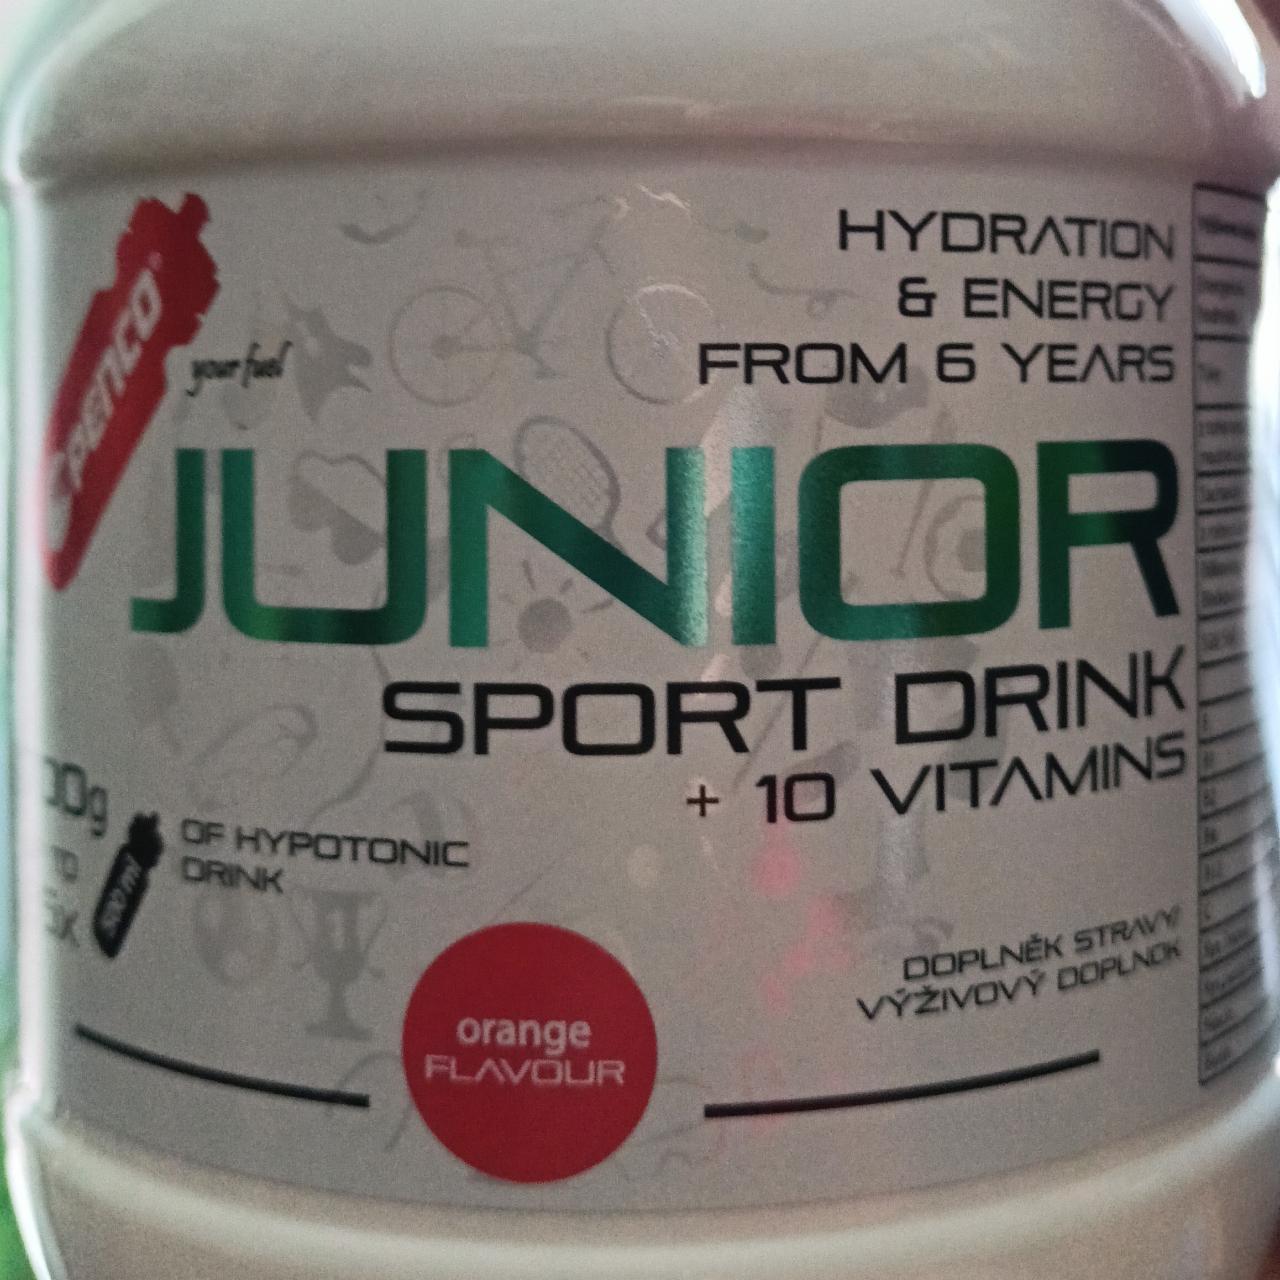 Fotografie - Junior sport drink + 10 vitamins orange flavour Penco